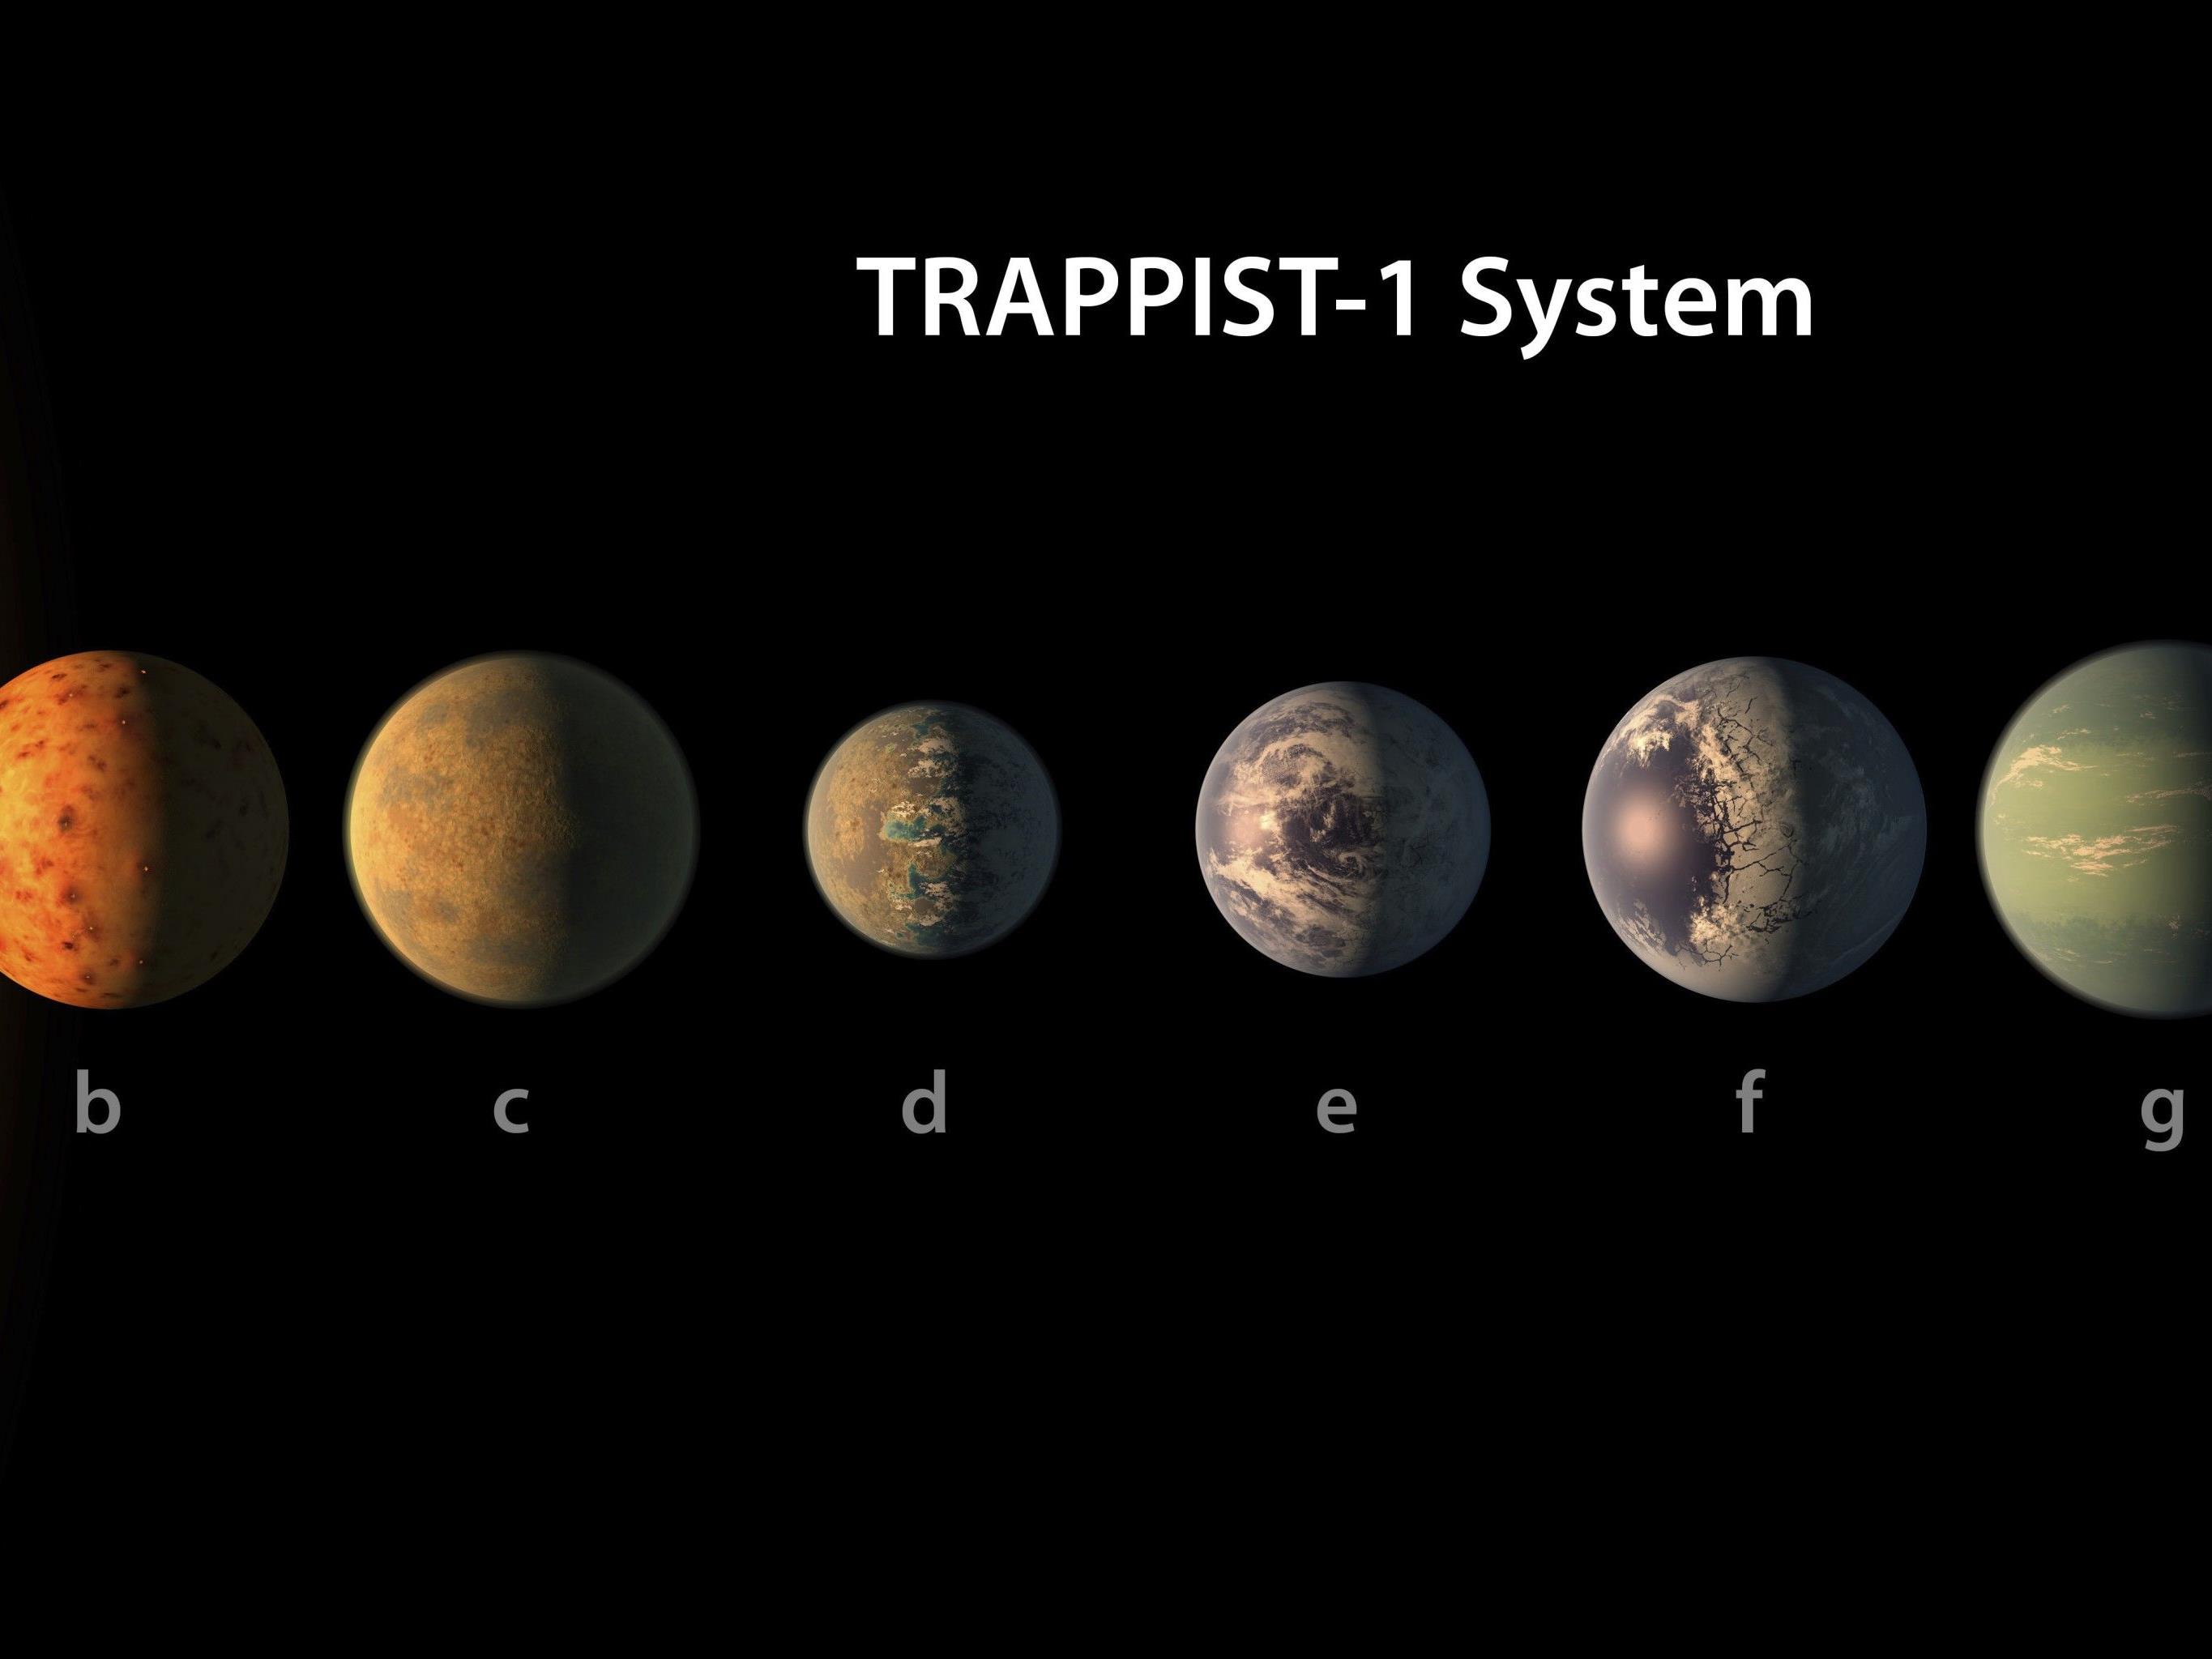 Wissenschafter hoffen auf Entdeckung außerirdischen Lebens im Trappist-1-System.